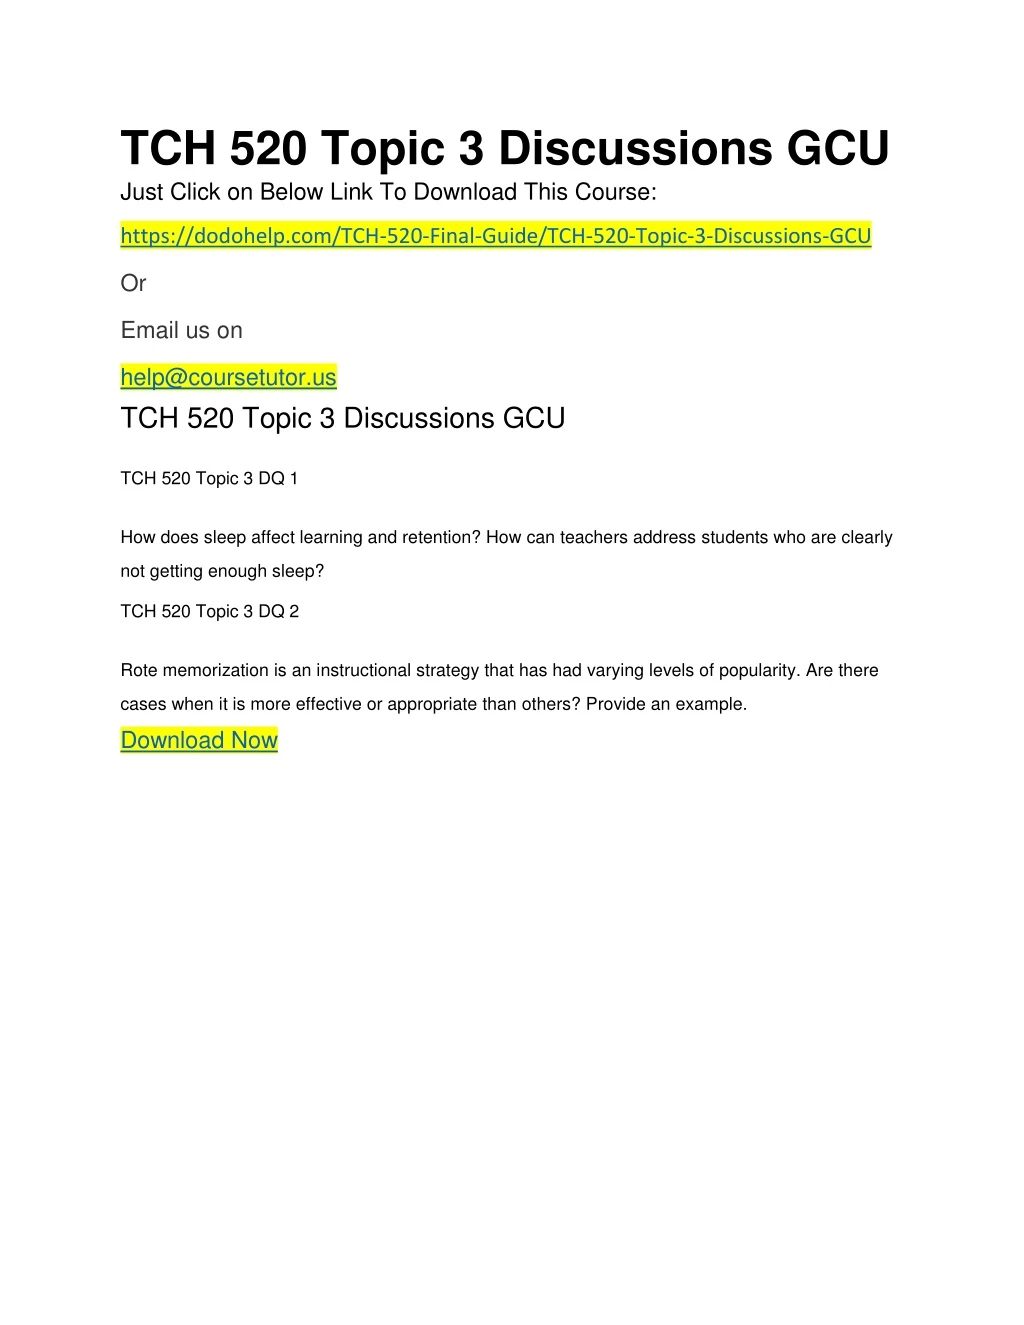 tch 520 topic 3 discussions gcu just click